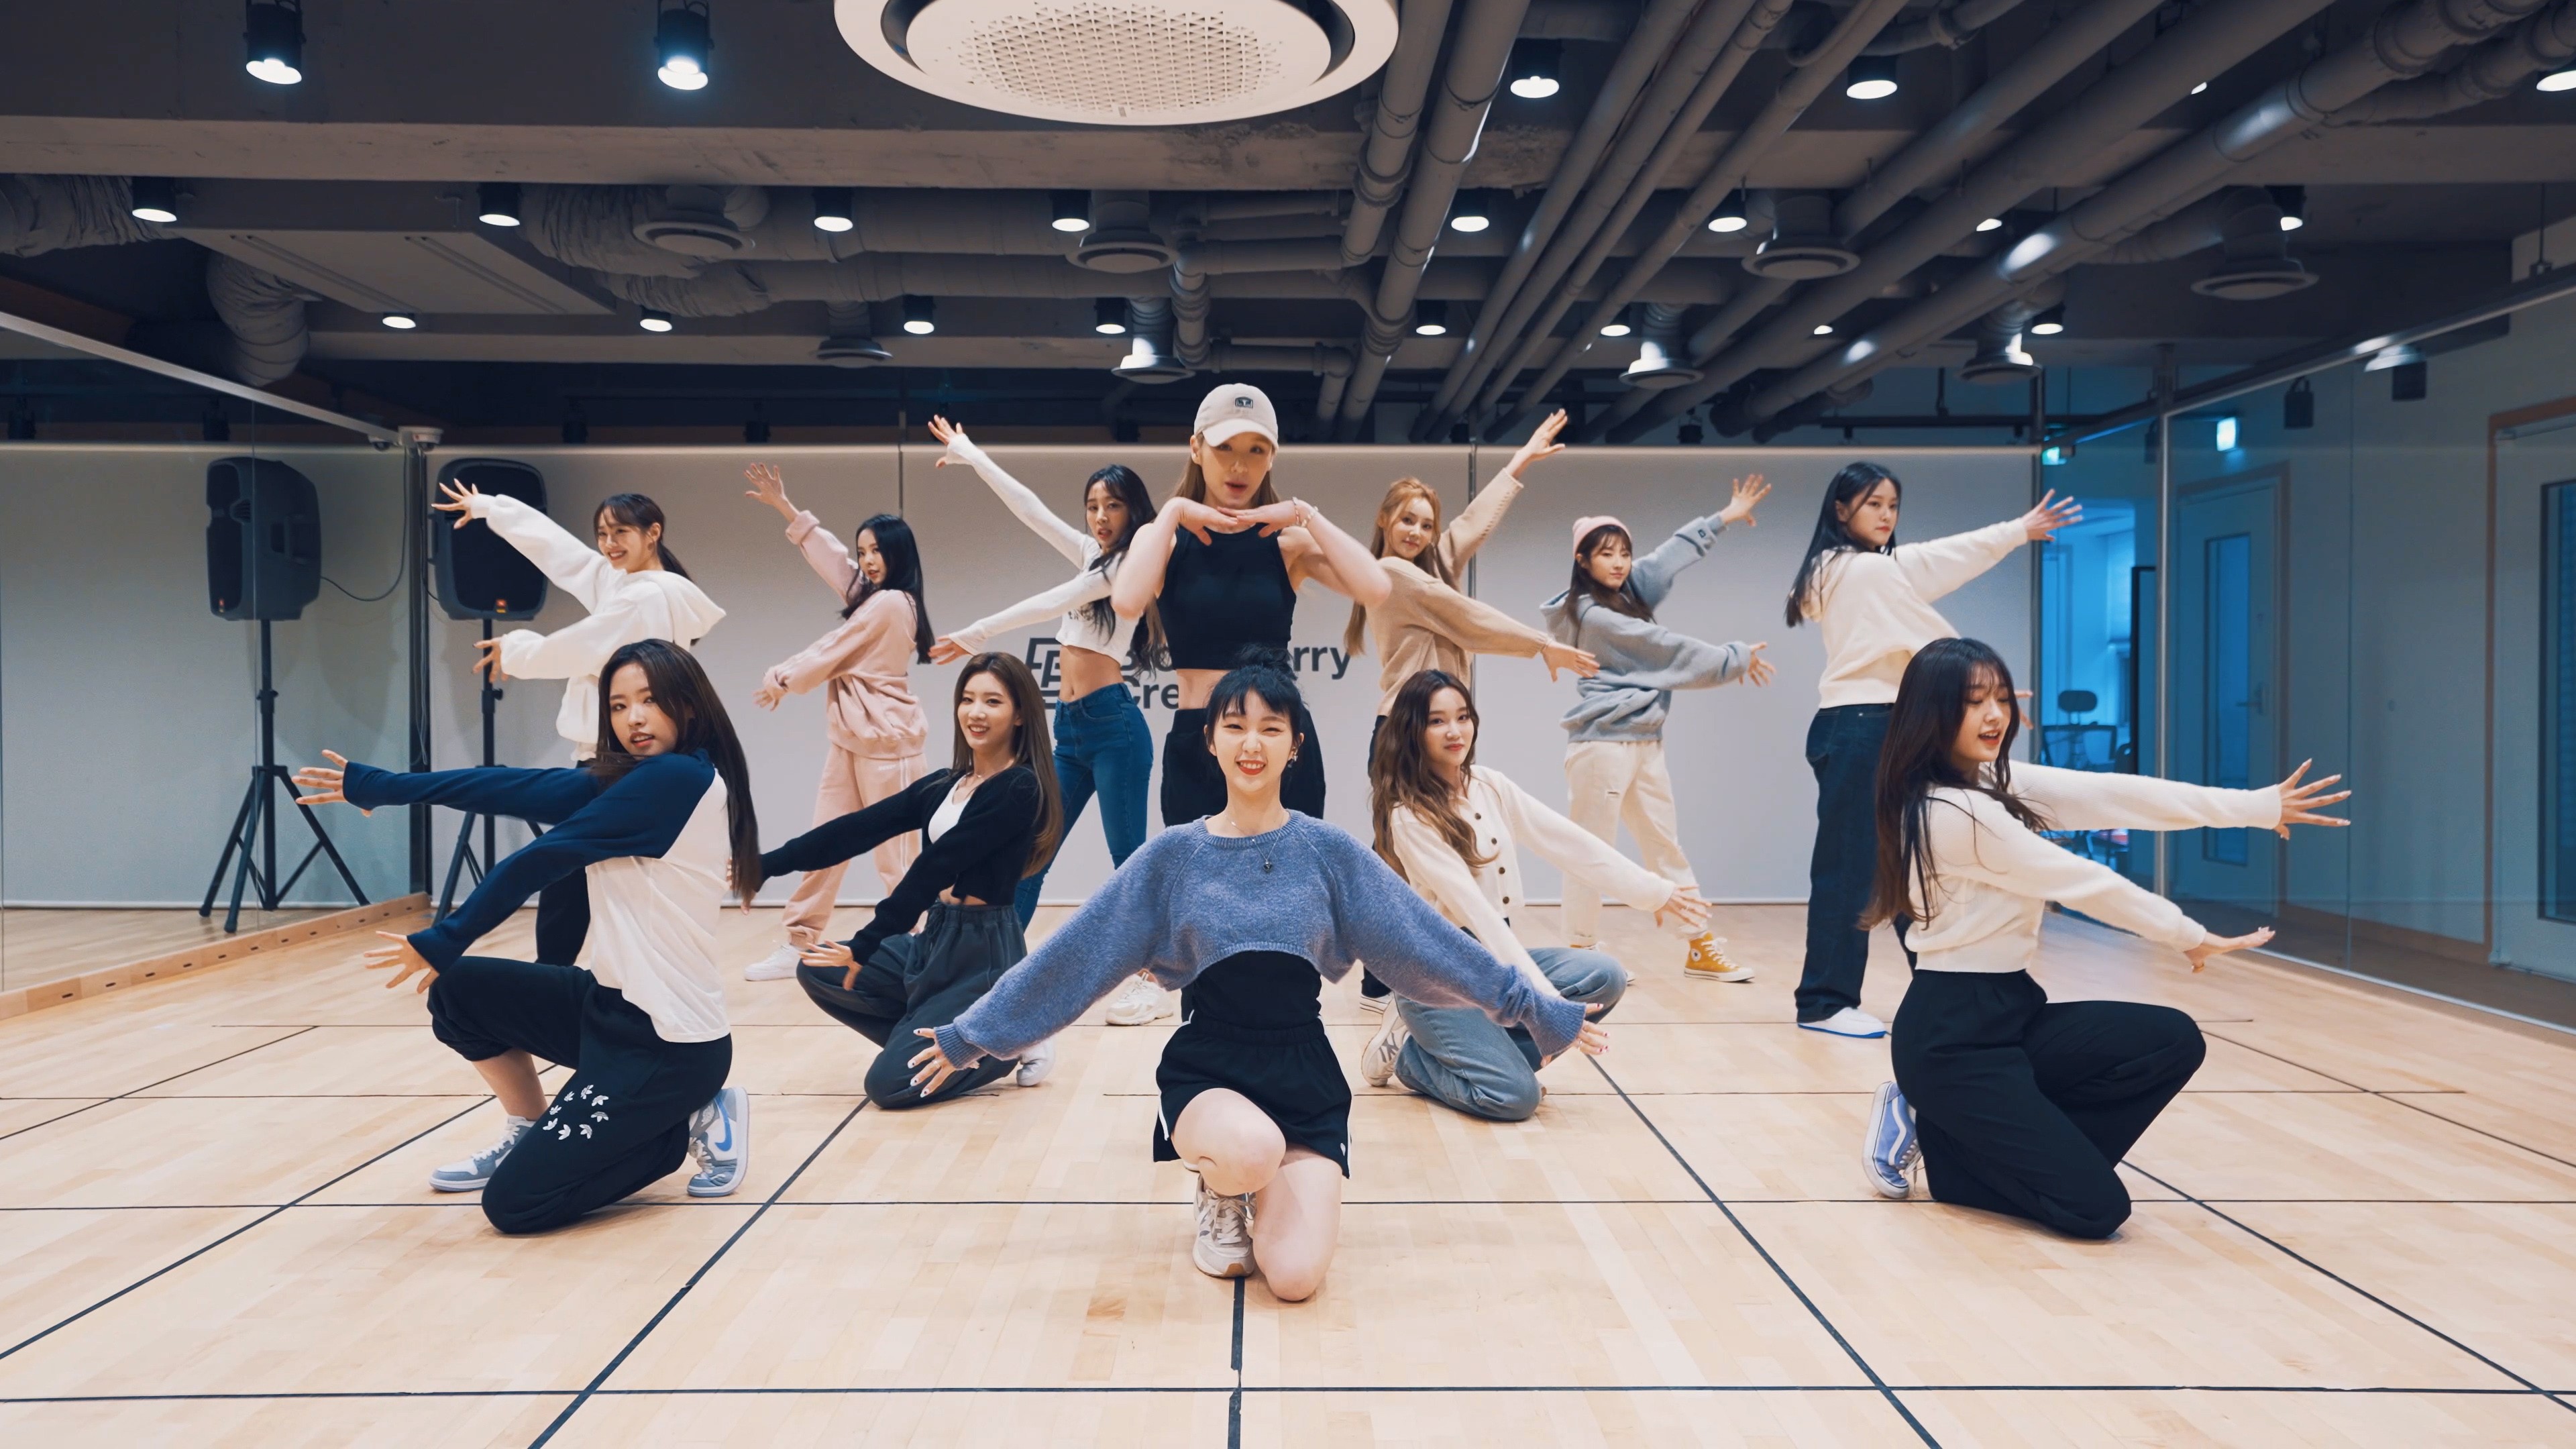 [이달의 소녀] "HULA HOOP" Dance Practice Video